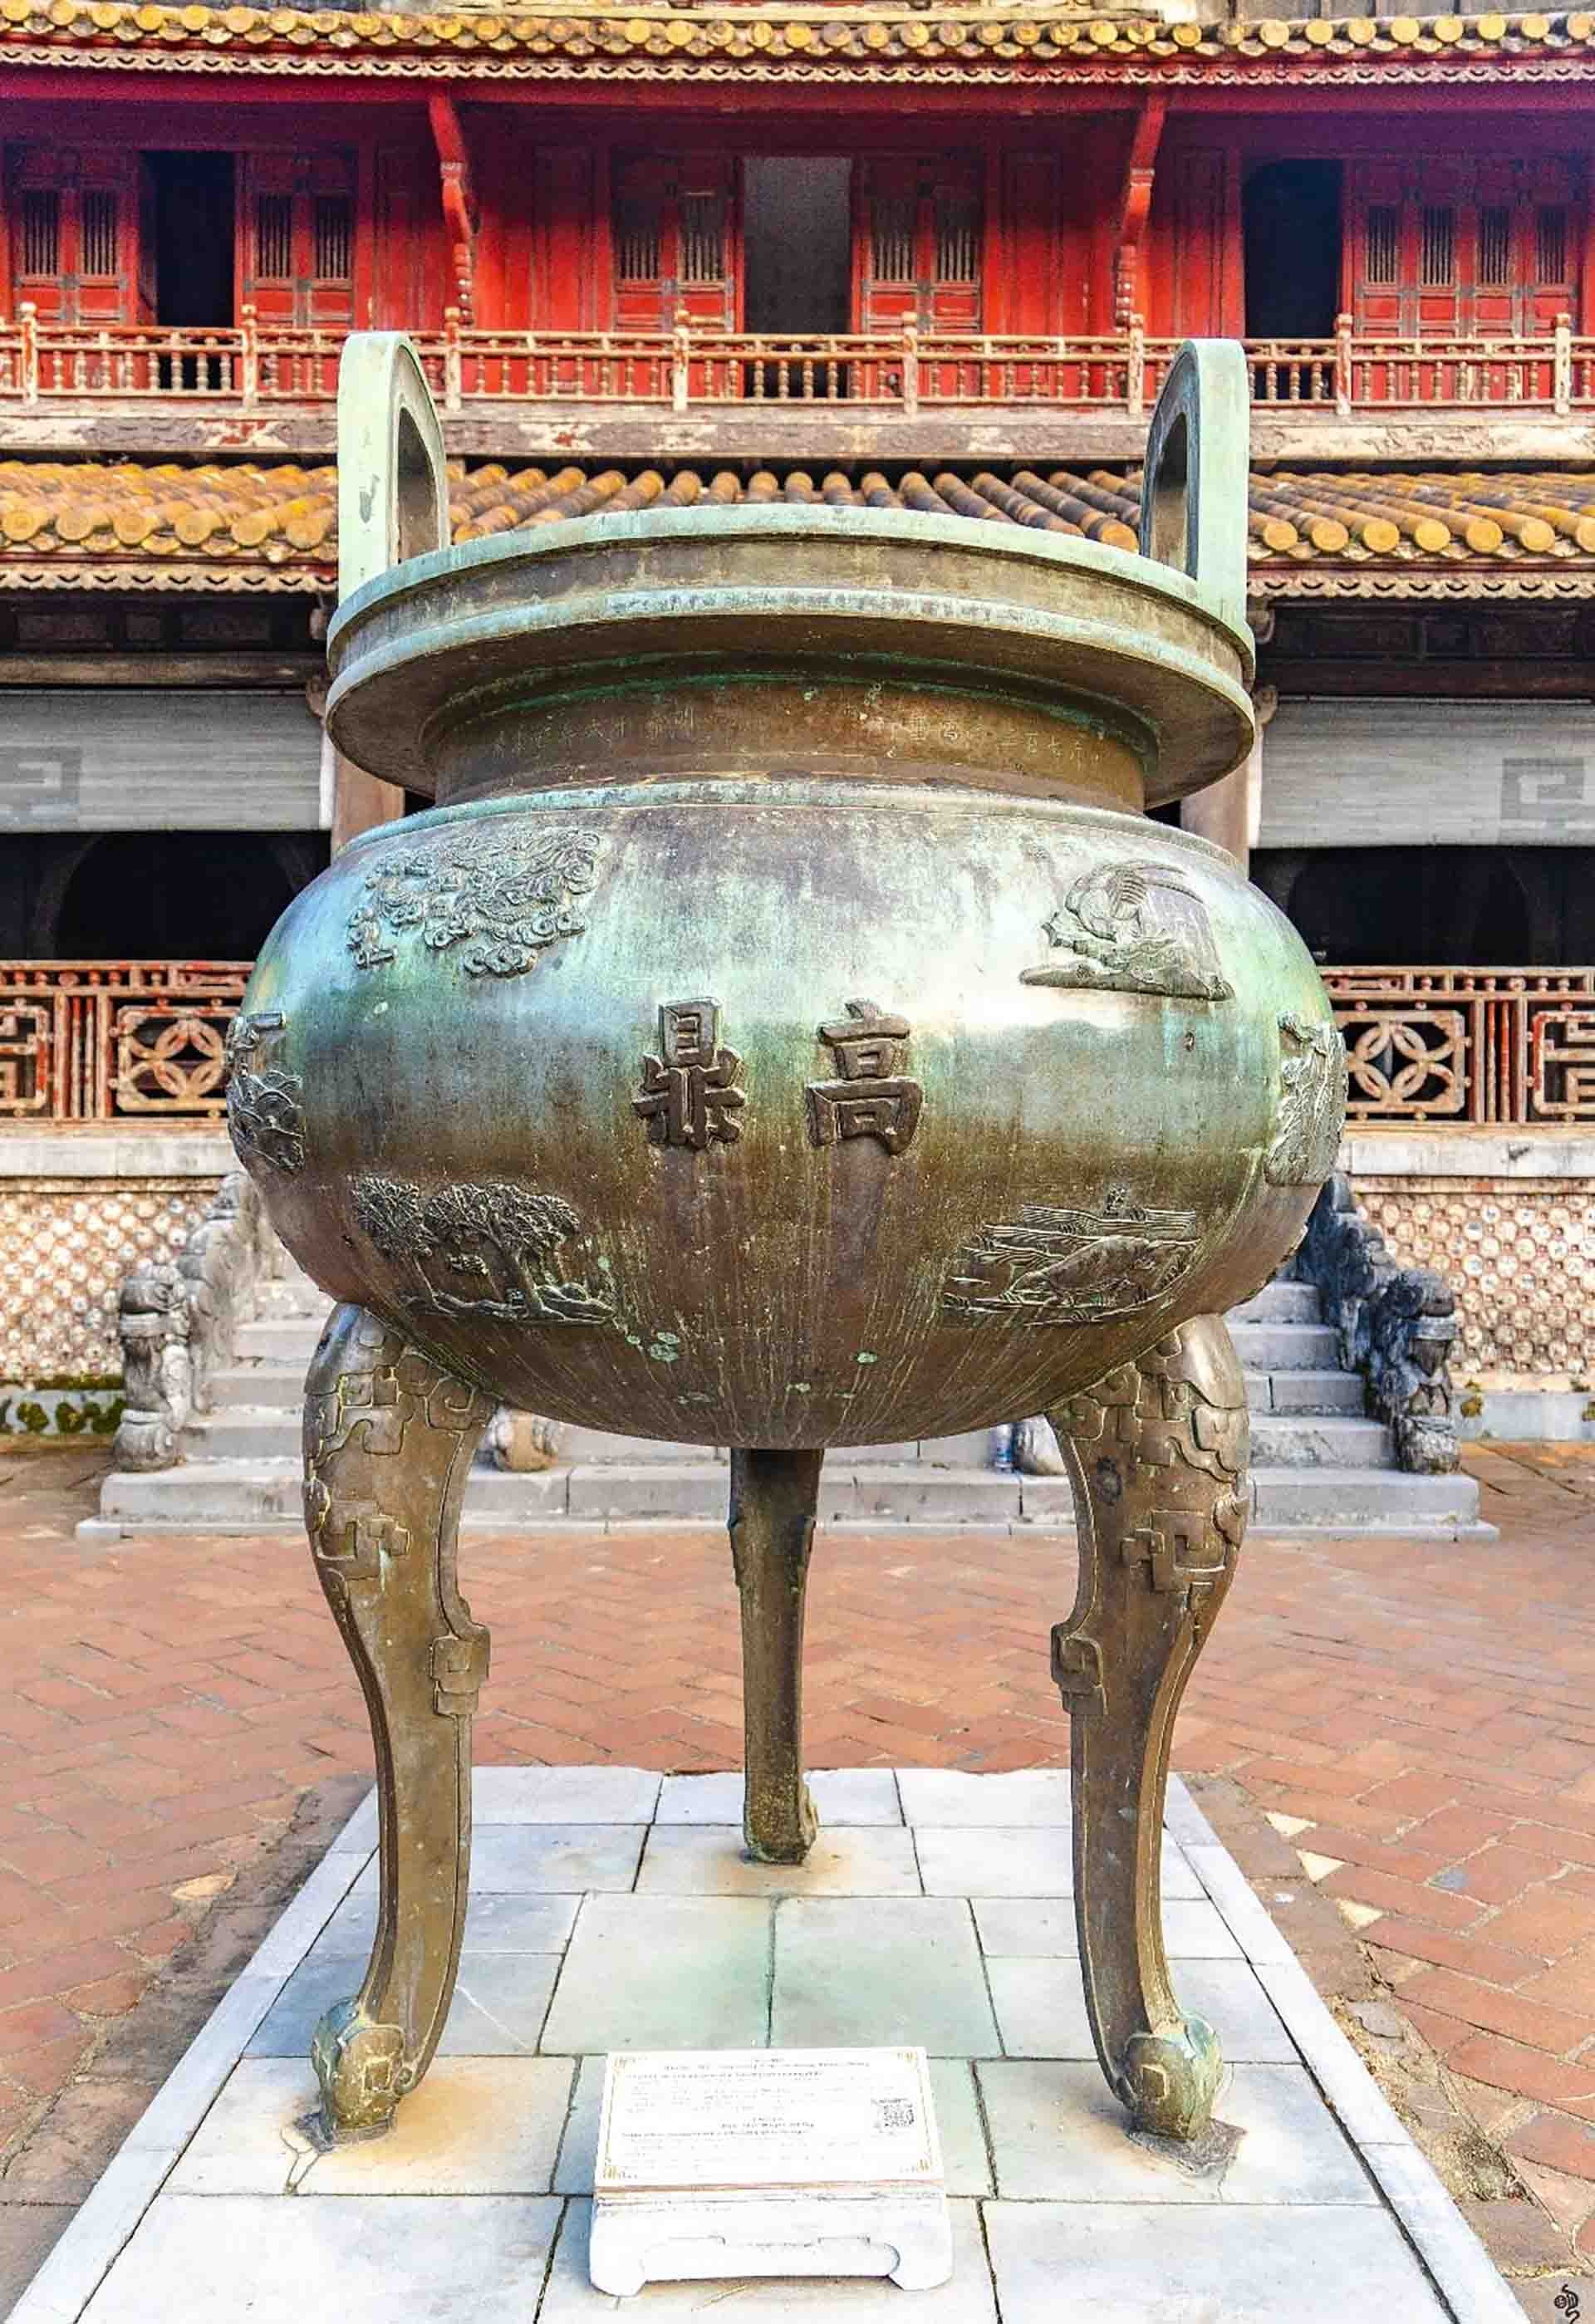 Những bản đúc nổi trên Cửu Đỉnh ở Hoàng cung Huế chính thức trở thành Di sản tư liệu của Chương trình Ký ức thế giới khu vực châu Á-Thái Bình Dương